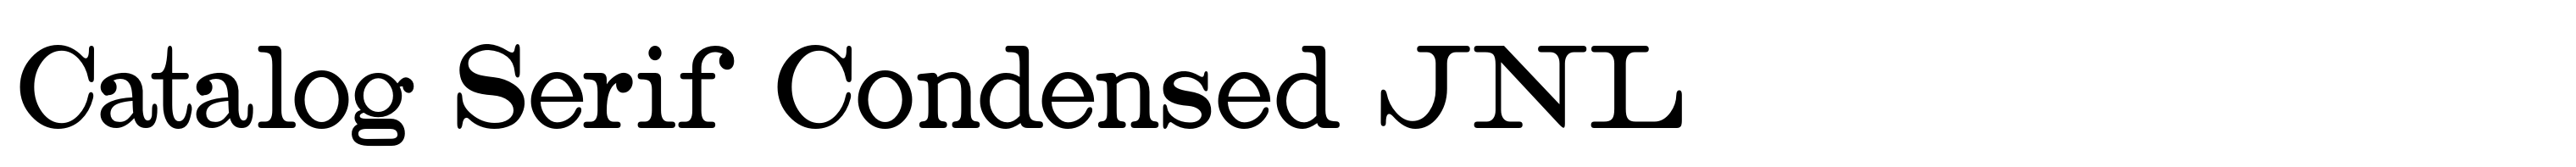 Catalog Serif Condensed JNL